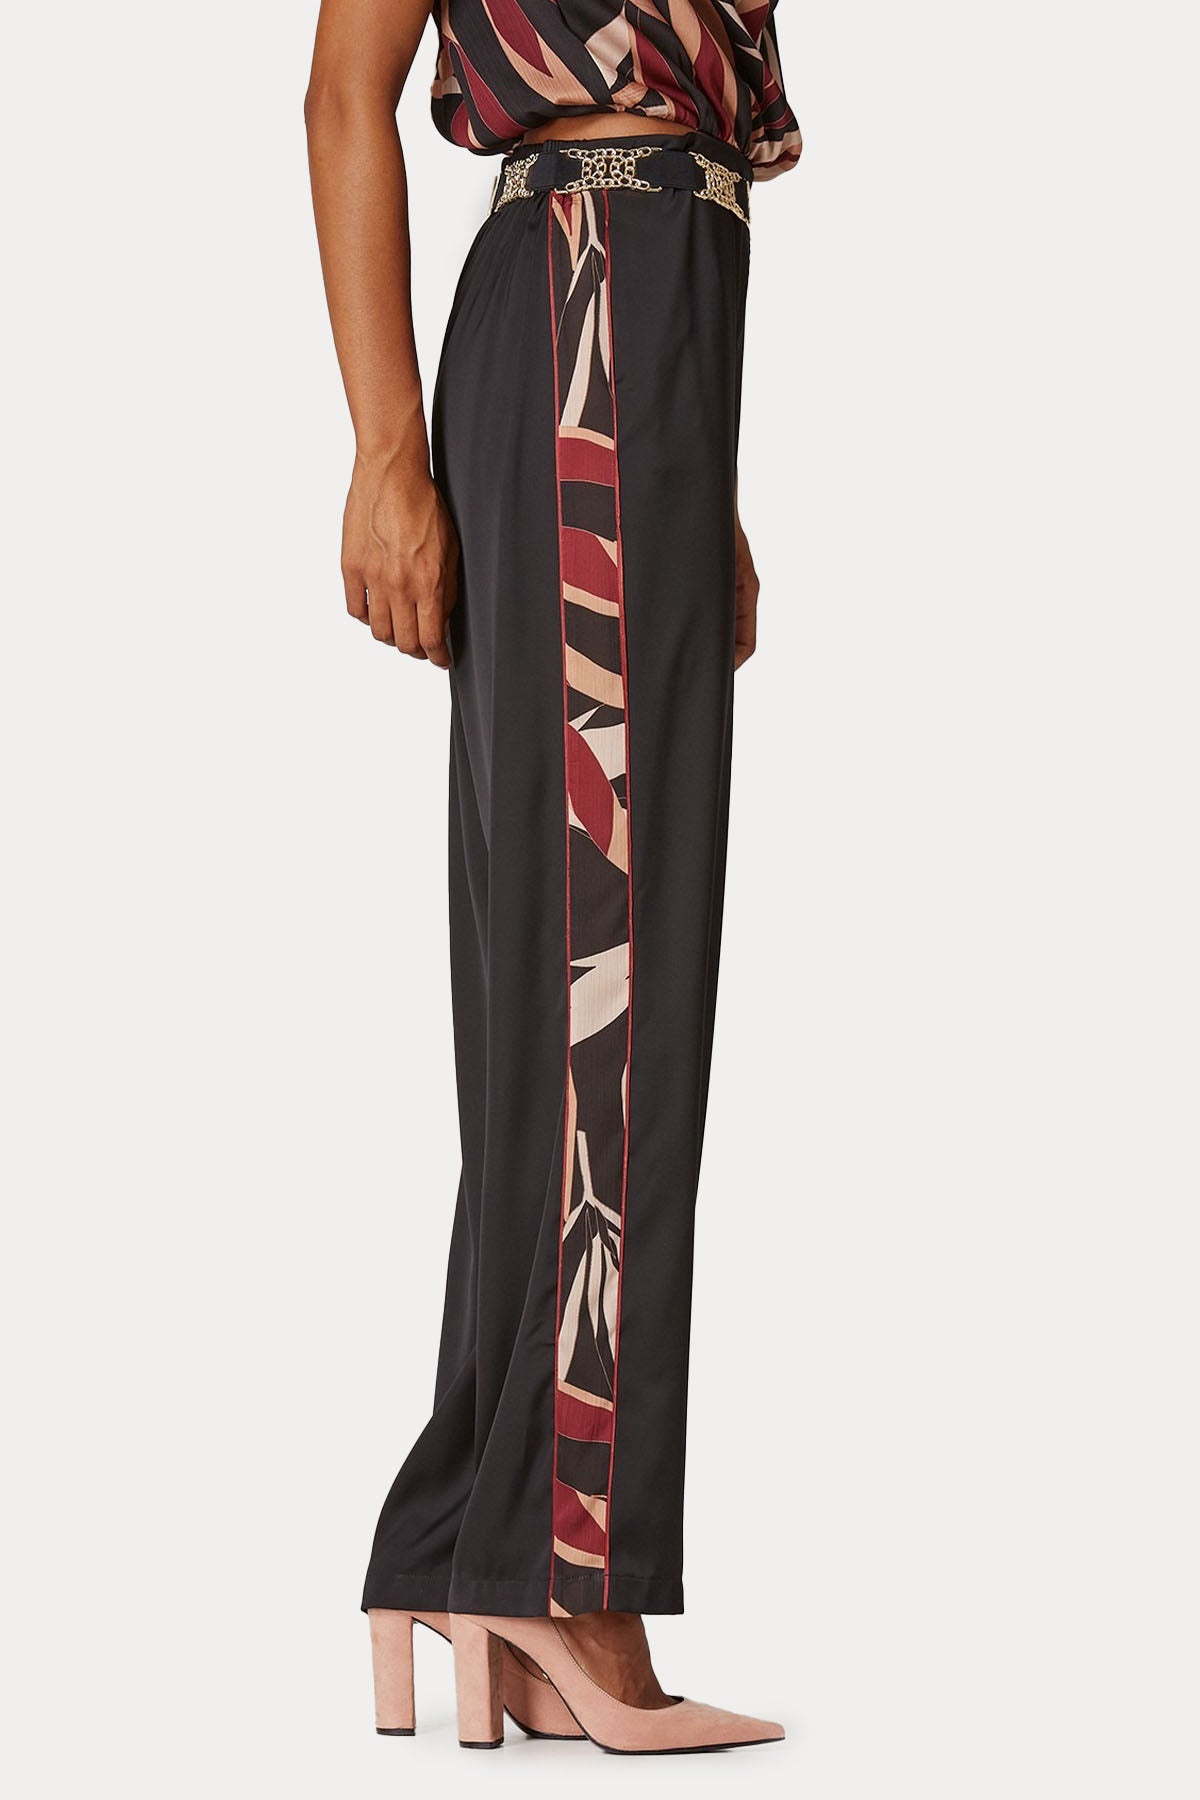 Lynne Comfort Fit Desenli Şeritli Yüksek Bel Pantolon-Libas Trendy Fashion Store